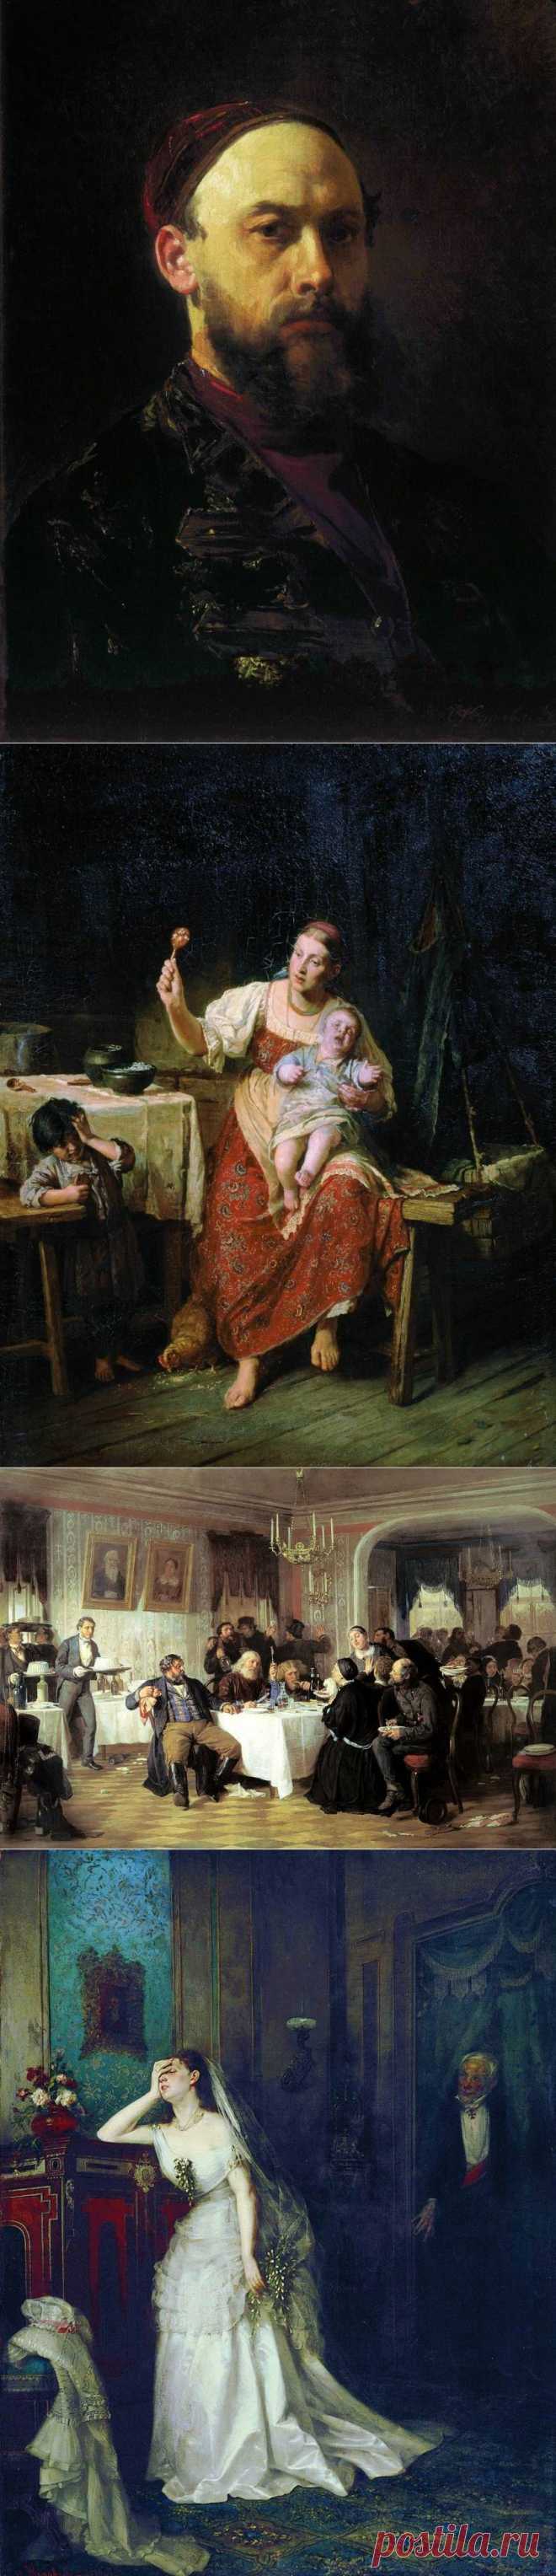 Журавлев Фирс Сергеевич (1836-1901) — русский жанровый живописец, академик Императорской Академии художеств.